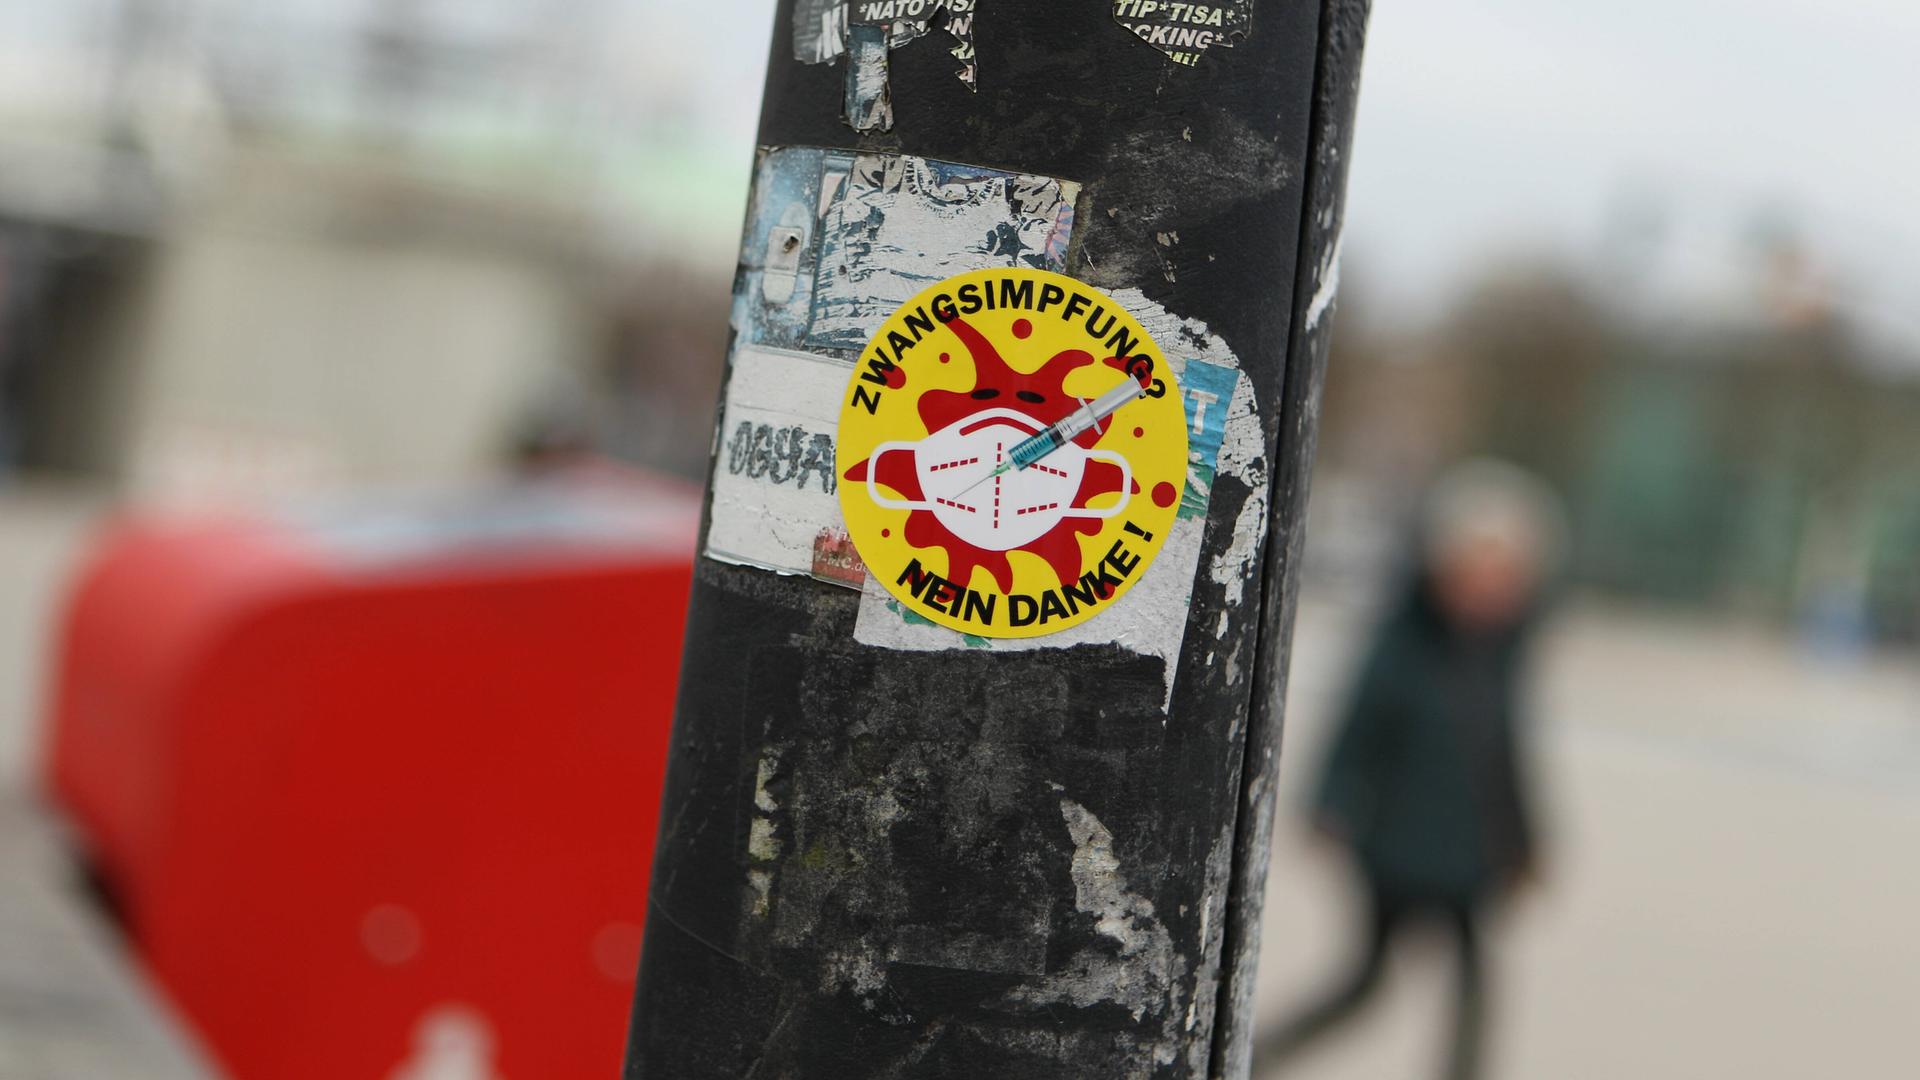 Sticker an einem Laternenpfahl, auf dem steht "Zwangs-Impfung? Nein danke". Das Motiv, ein rotes Coronavirus auf gelben Grund, erinnert an die Anti-Atomkraft-Aufkleber mit dem Text "Atomkraft? Nein danke".